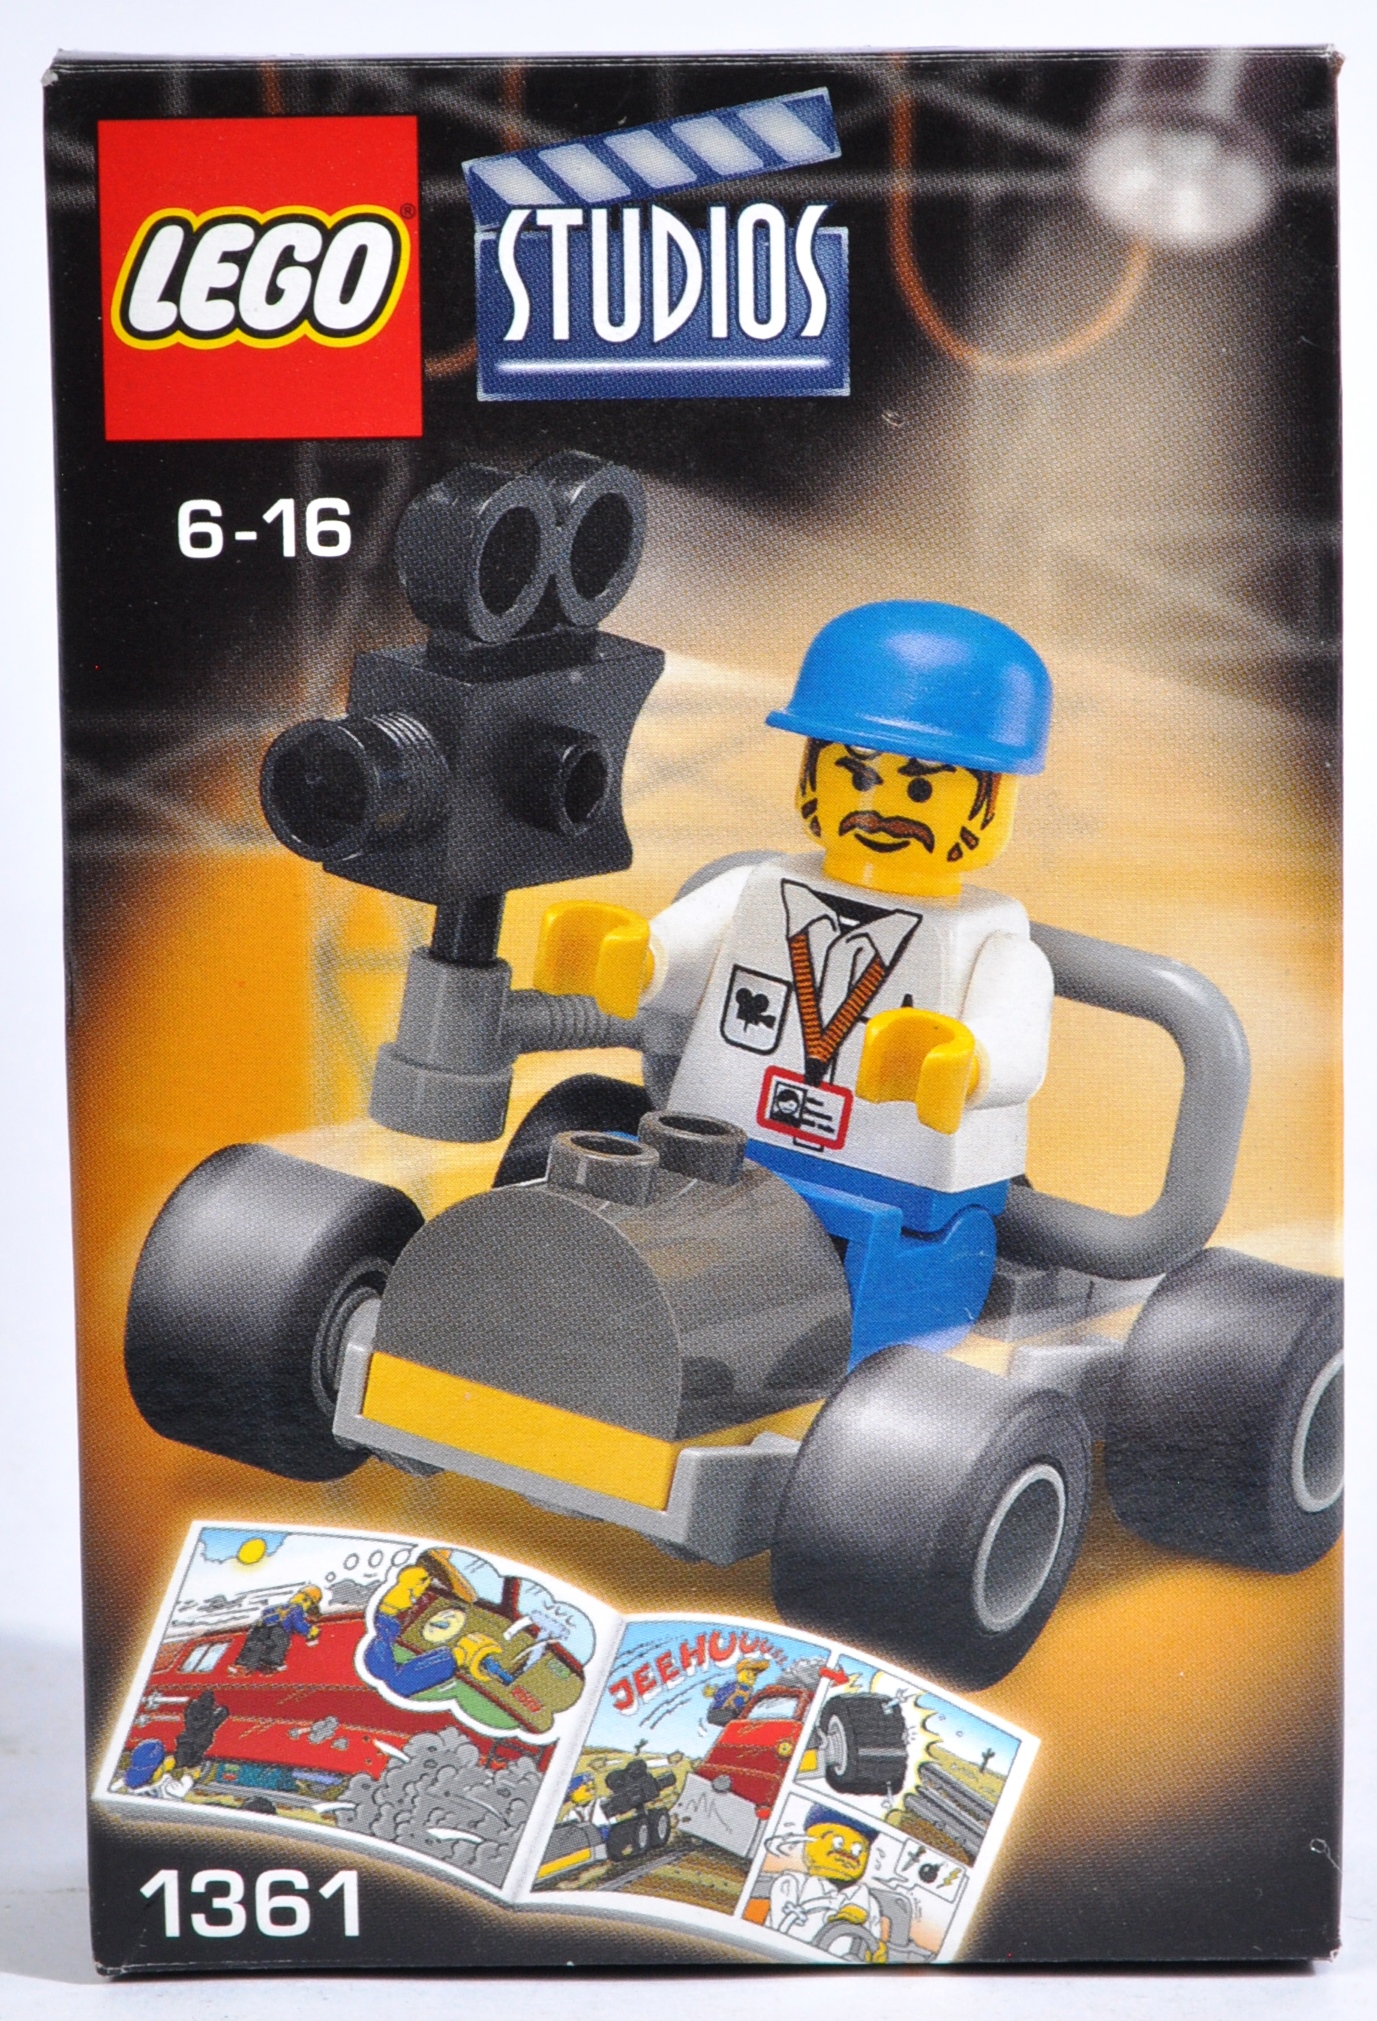 LEGO SETS - LEGO MOVIE AND LEGO STUDIOS - Image 11 of 13